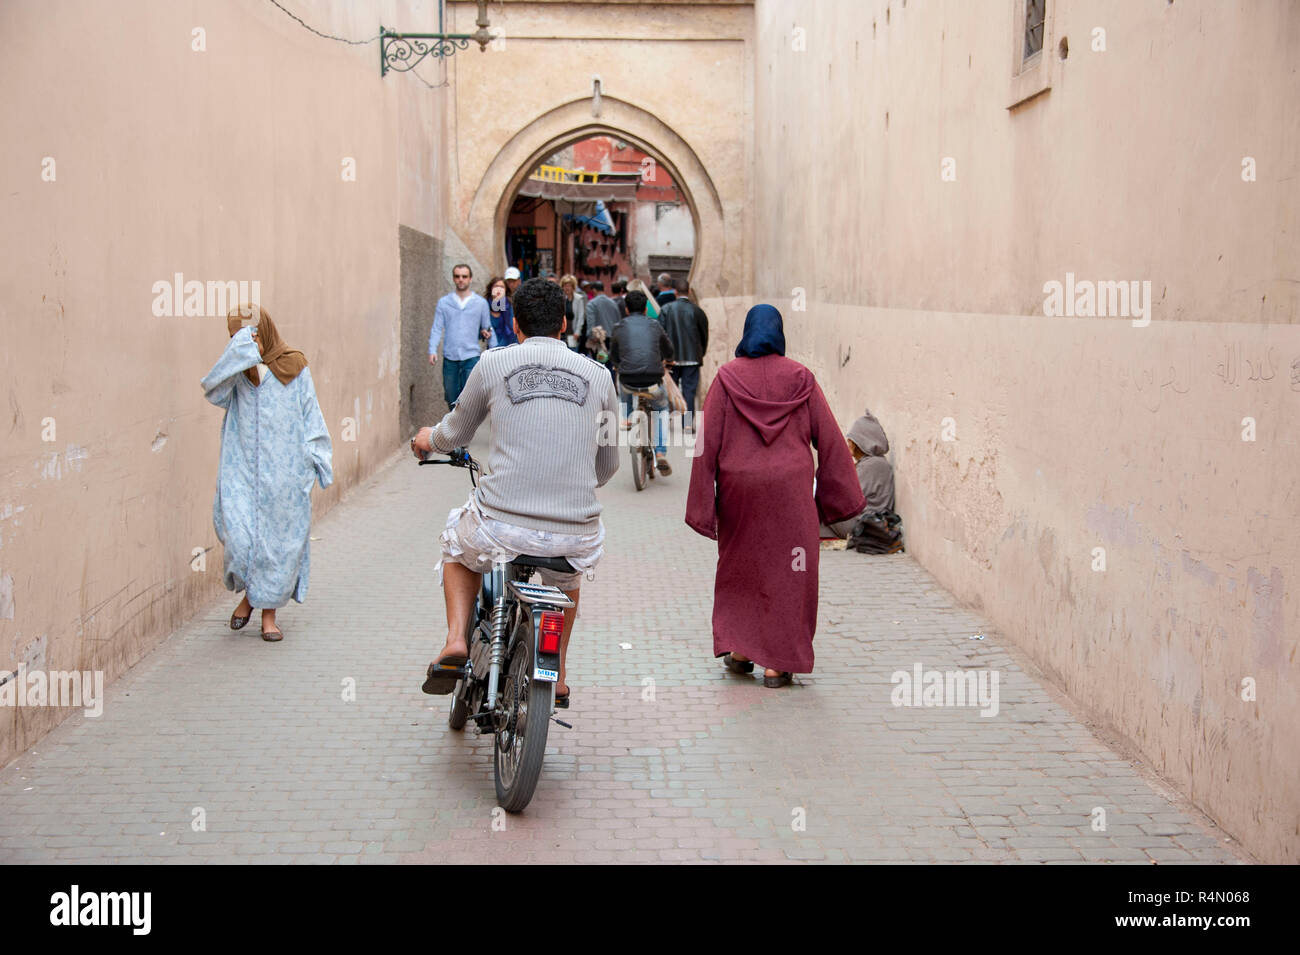 18-04-11. Marrakesch, Marokko. Straßenszene in der Medina, mit einem Motorroller weben zwischen Passagieren. Foto © Simon Grosset/Q-Fotografie Stockfoto